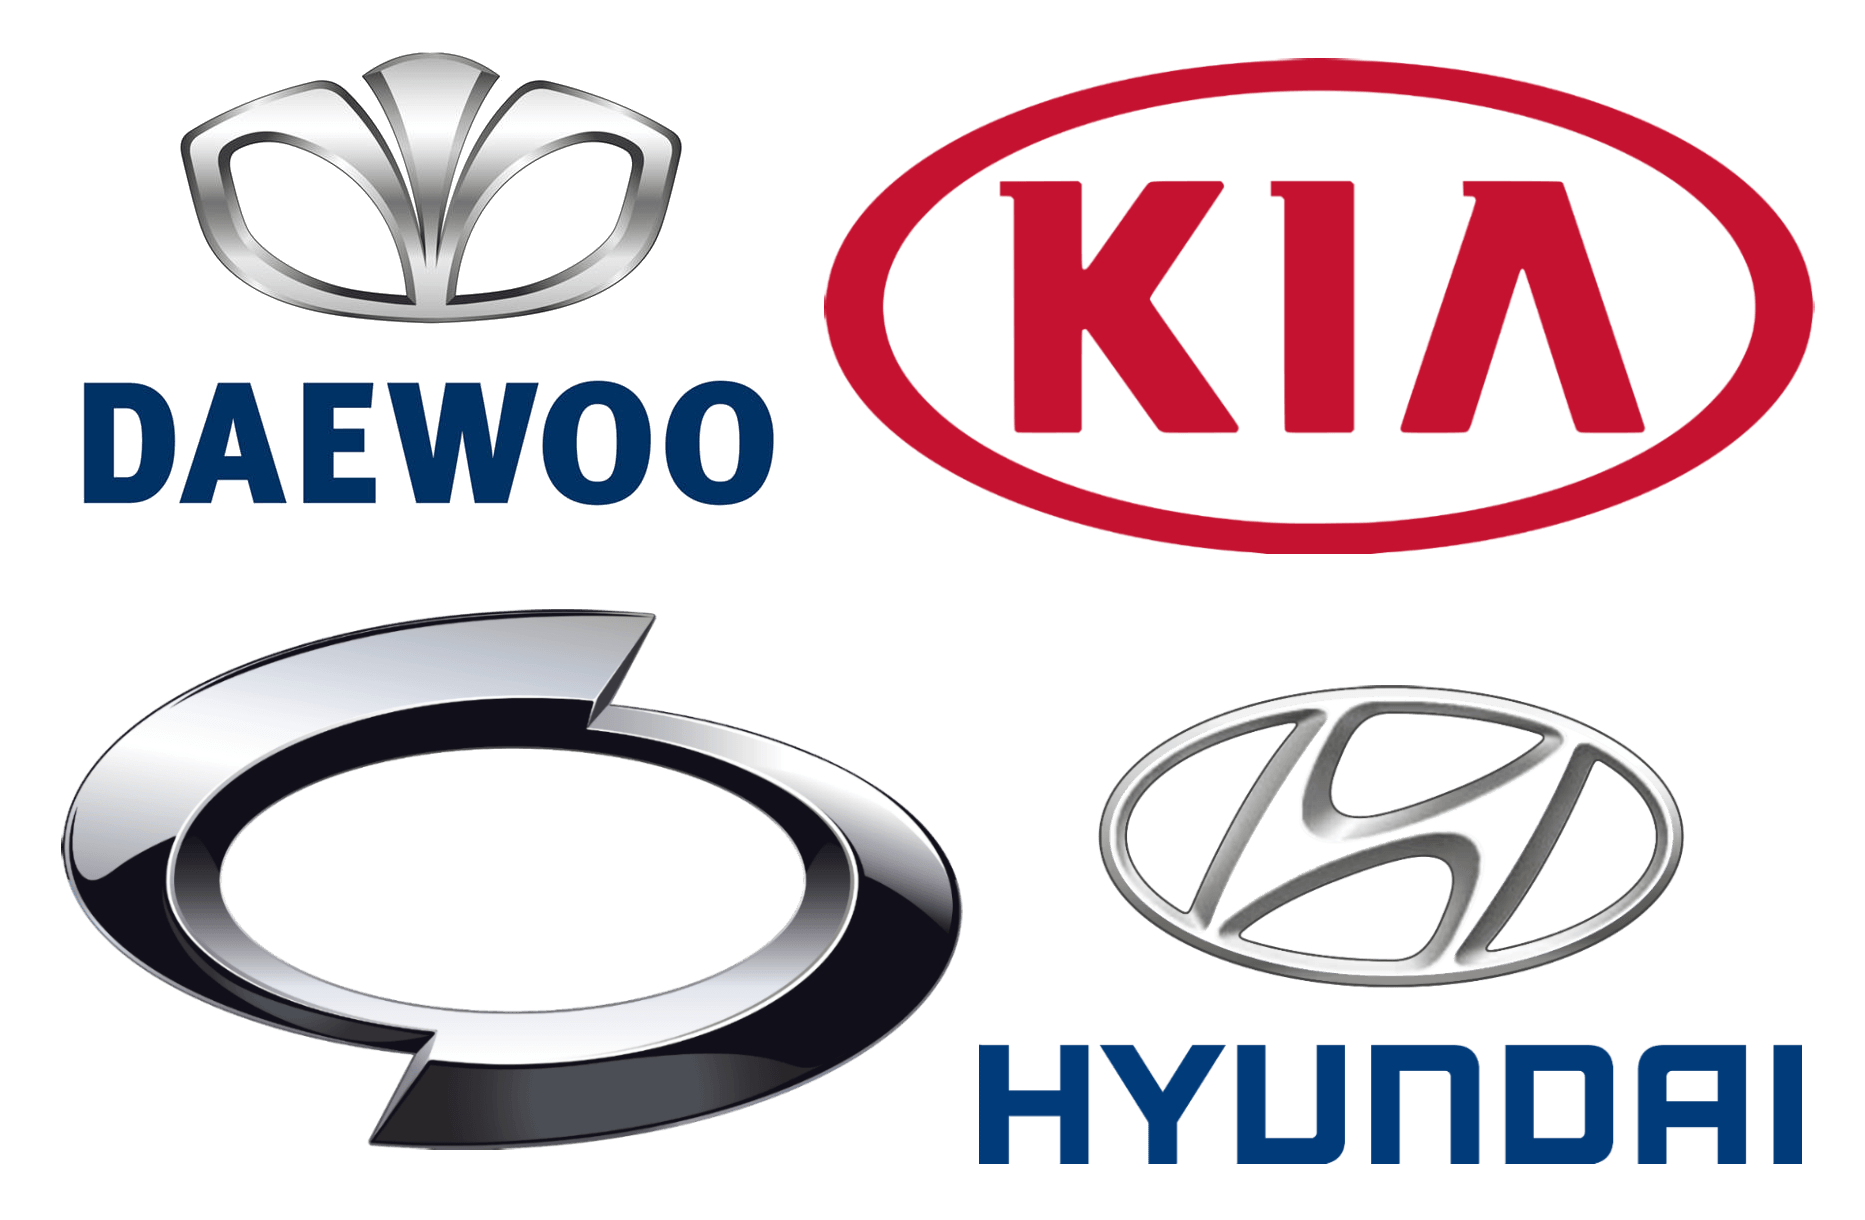 South Korea Car Logo - Korean Car Brands, Companies and Manufacturers | Car Brand Names.com